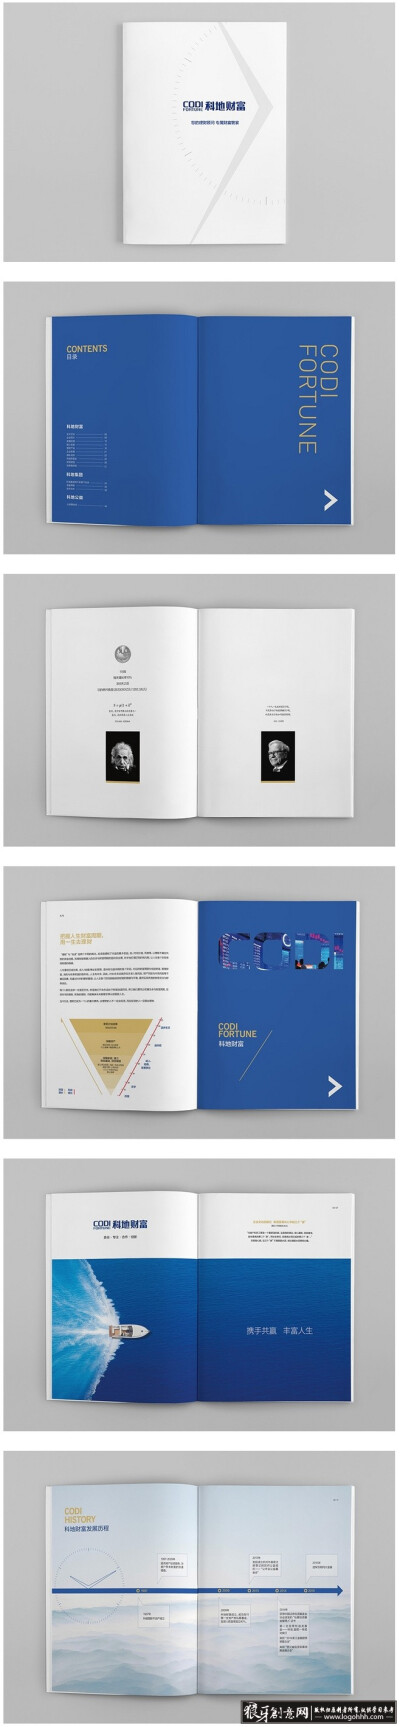 创意画册 科技画册 企业宣传册 简约画册封面设计 创意画册 科技画册